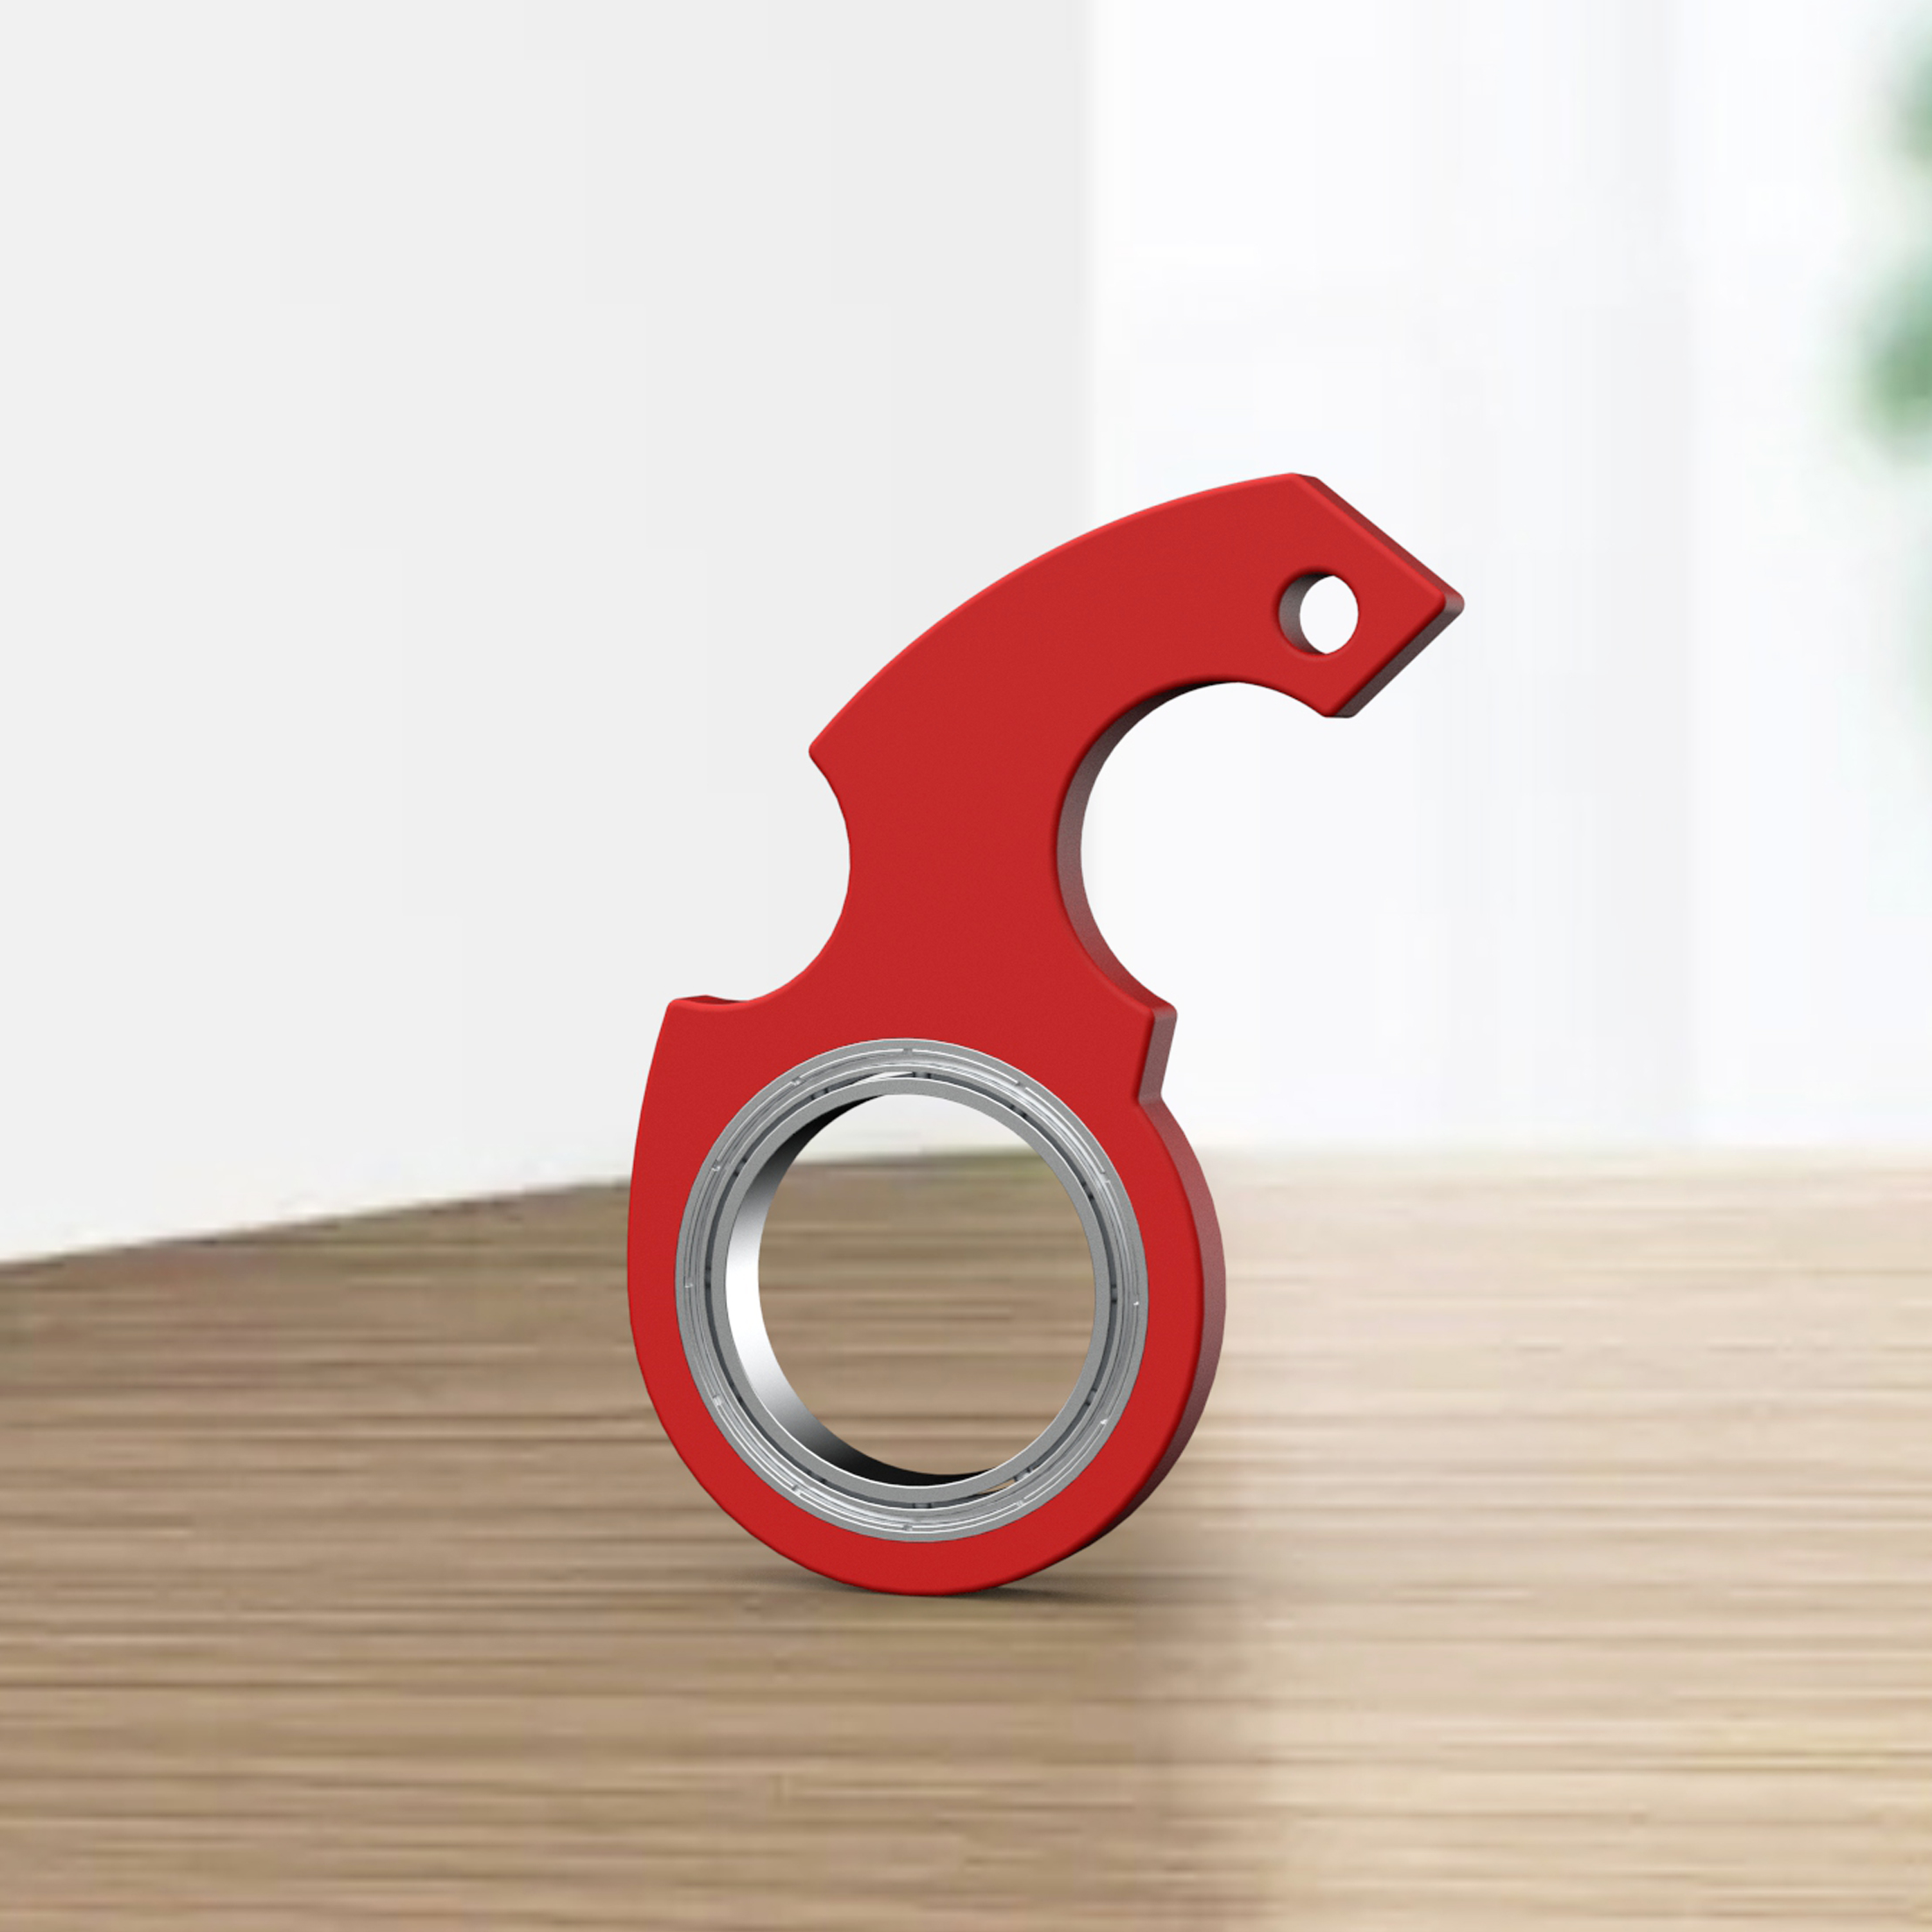 Fidget Spinner Toy Keychain Pro